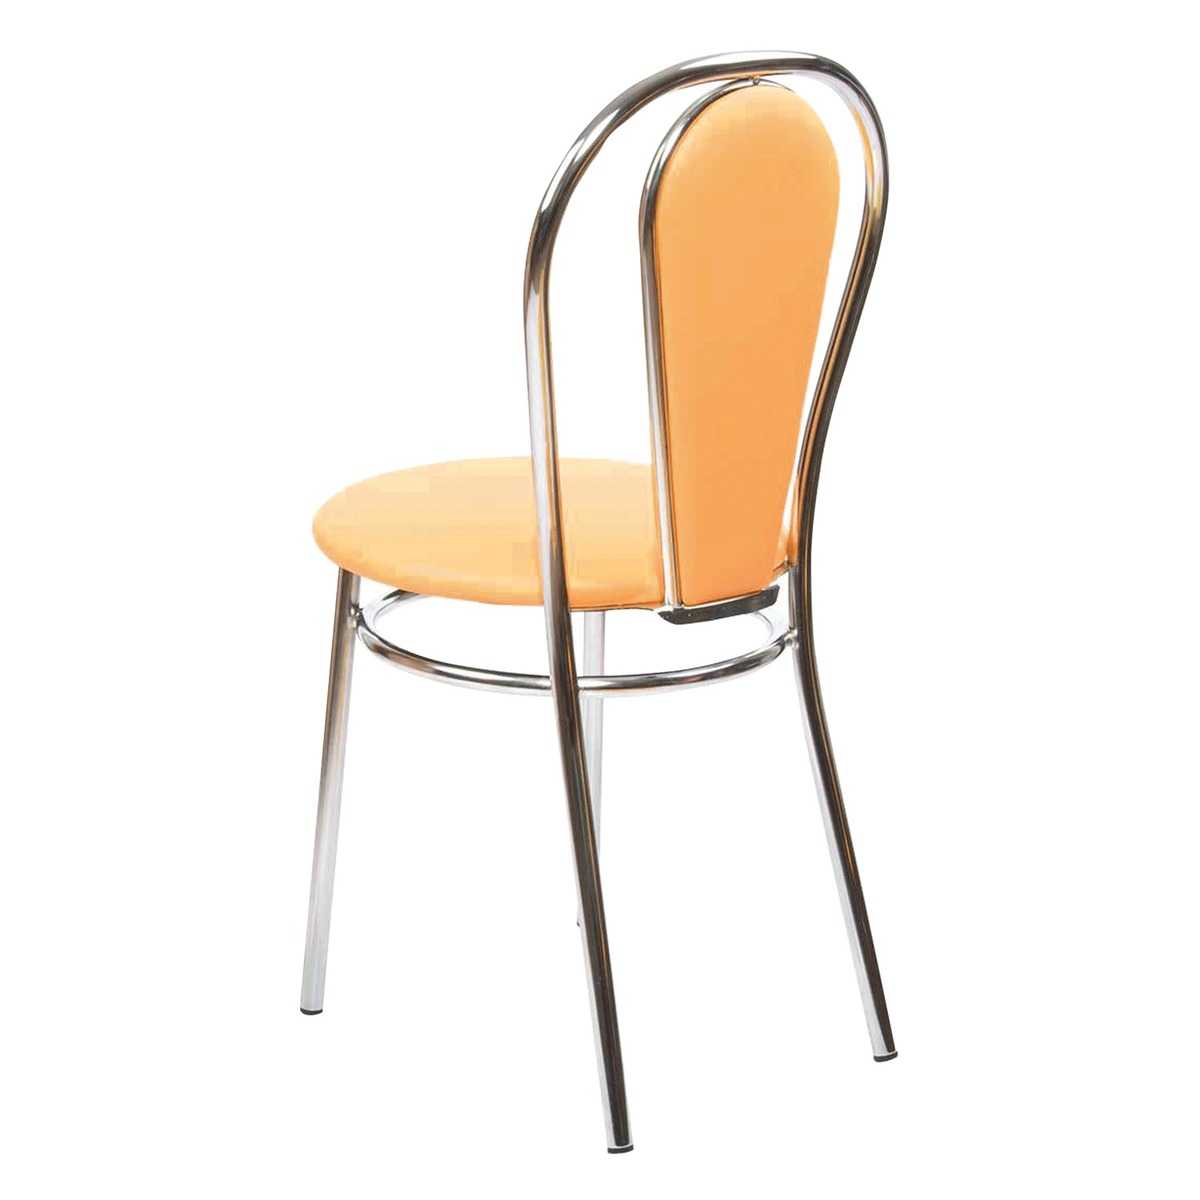 Хромированные стулья для кухни – роскошный и практичный вариант